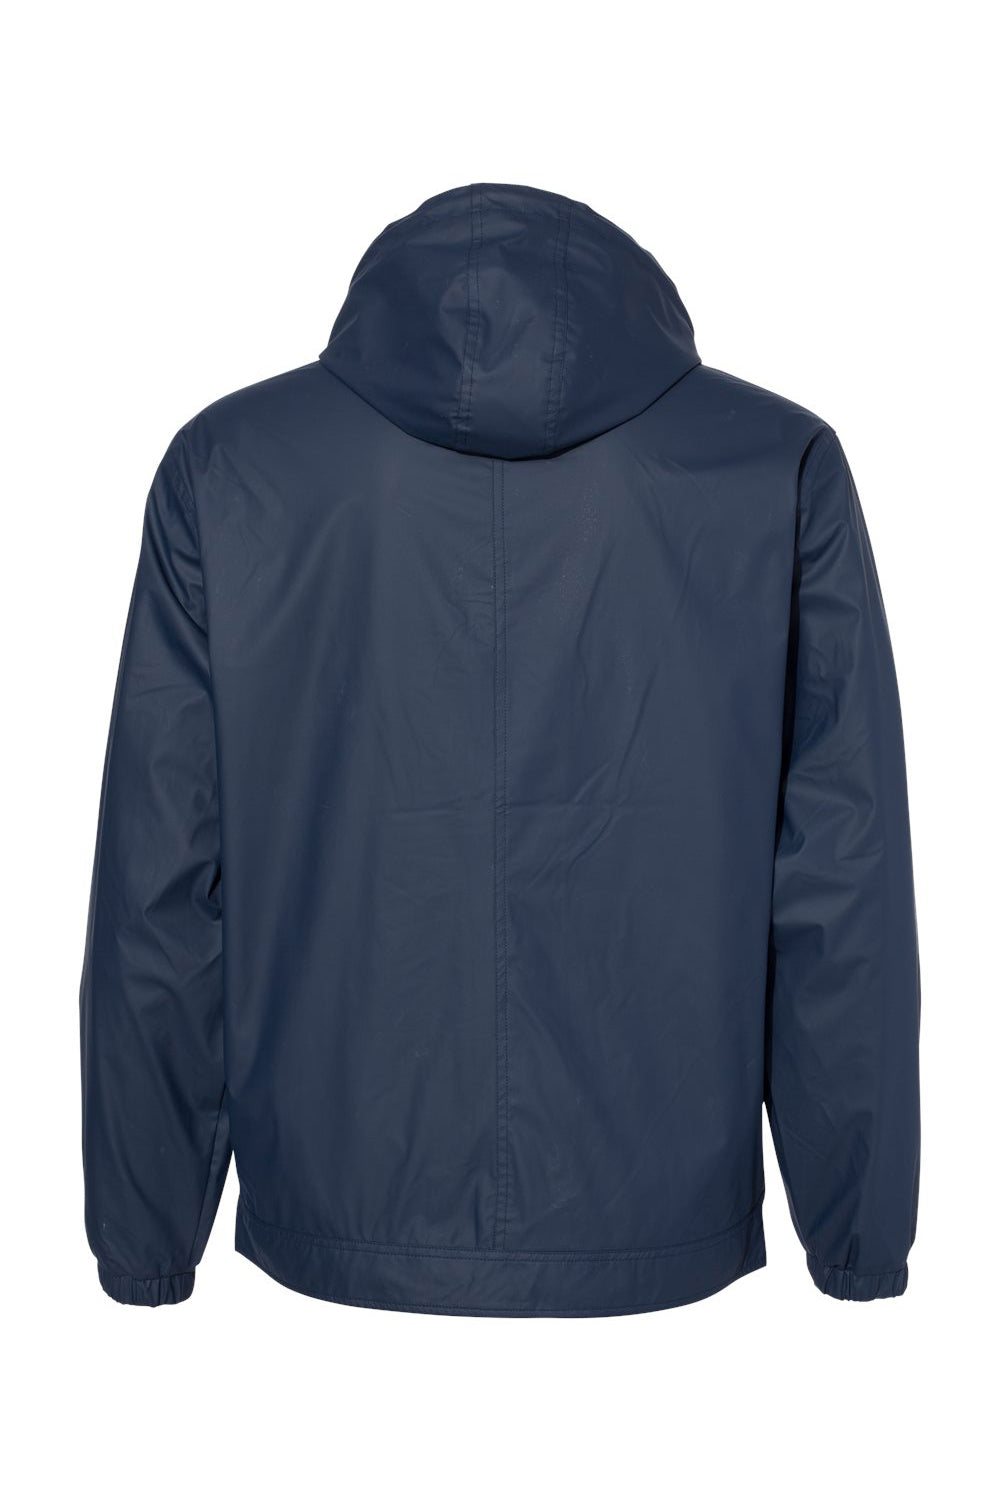 Weatherproof 193910 Mens Vintage Full Zip Hooded Rain Jacket Navy Blue Flat Back